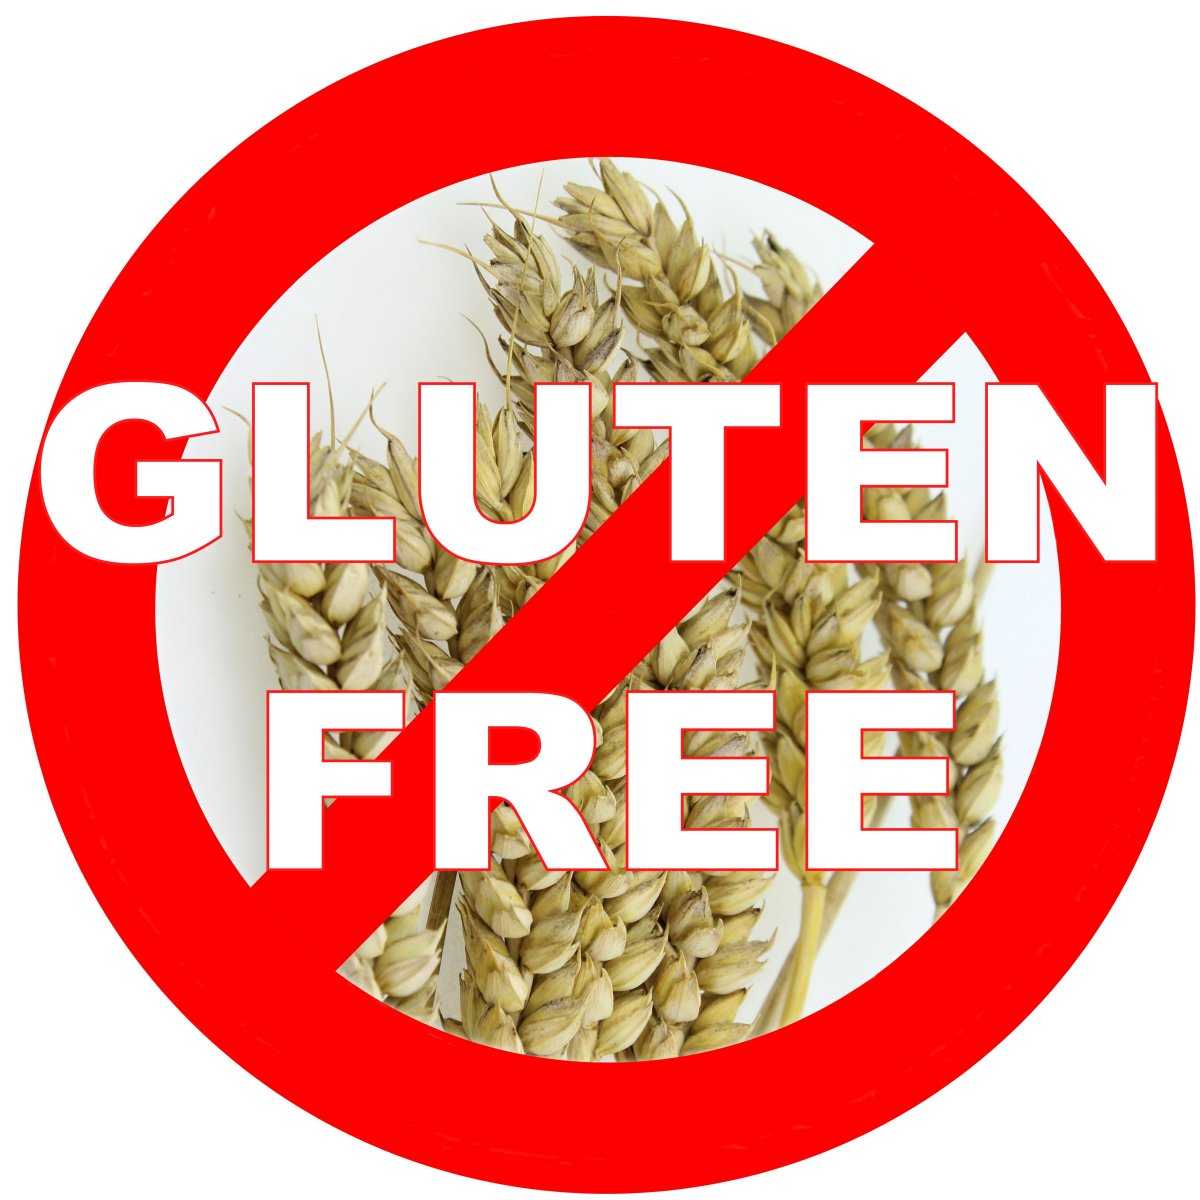 Résultat de recherche d'images pour "gluten free"